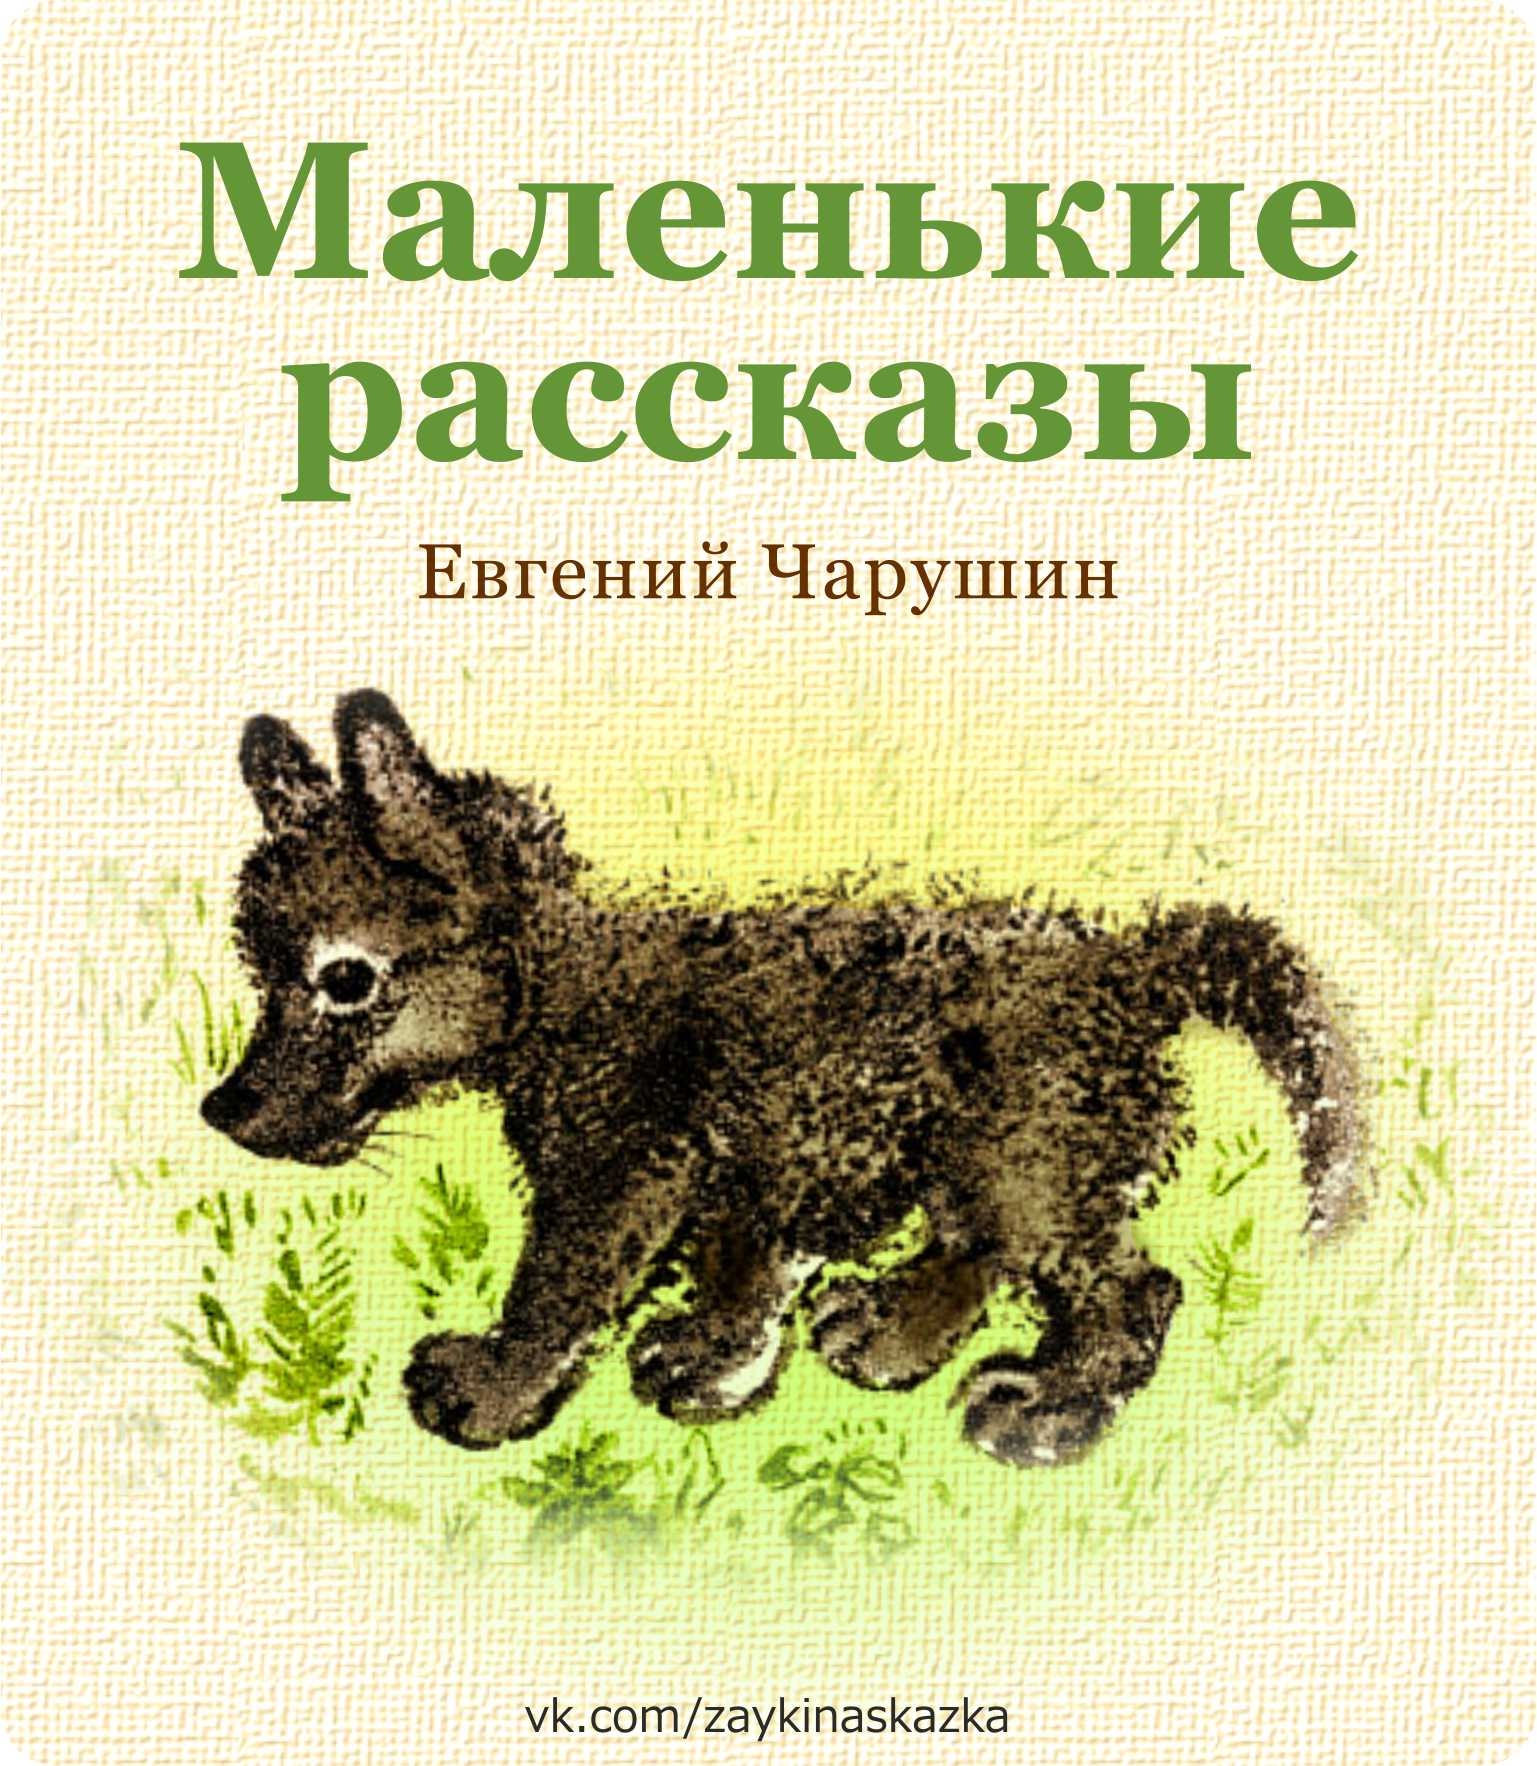 Книга о животных коротко. Чарушин обложки книг для детей.